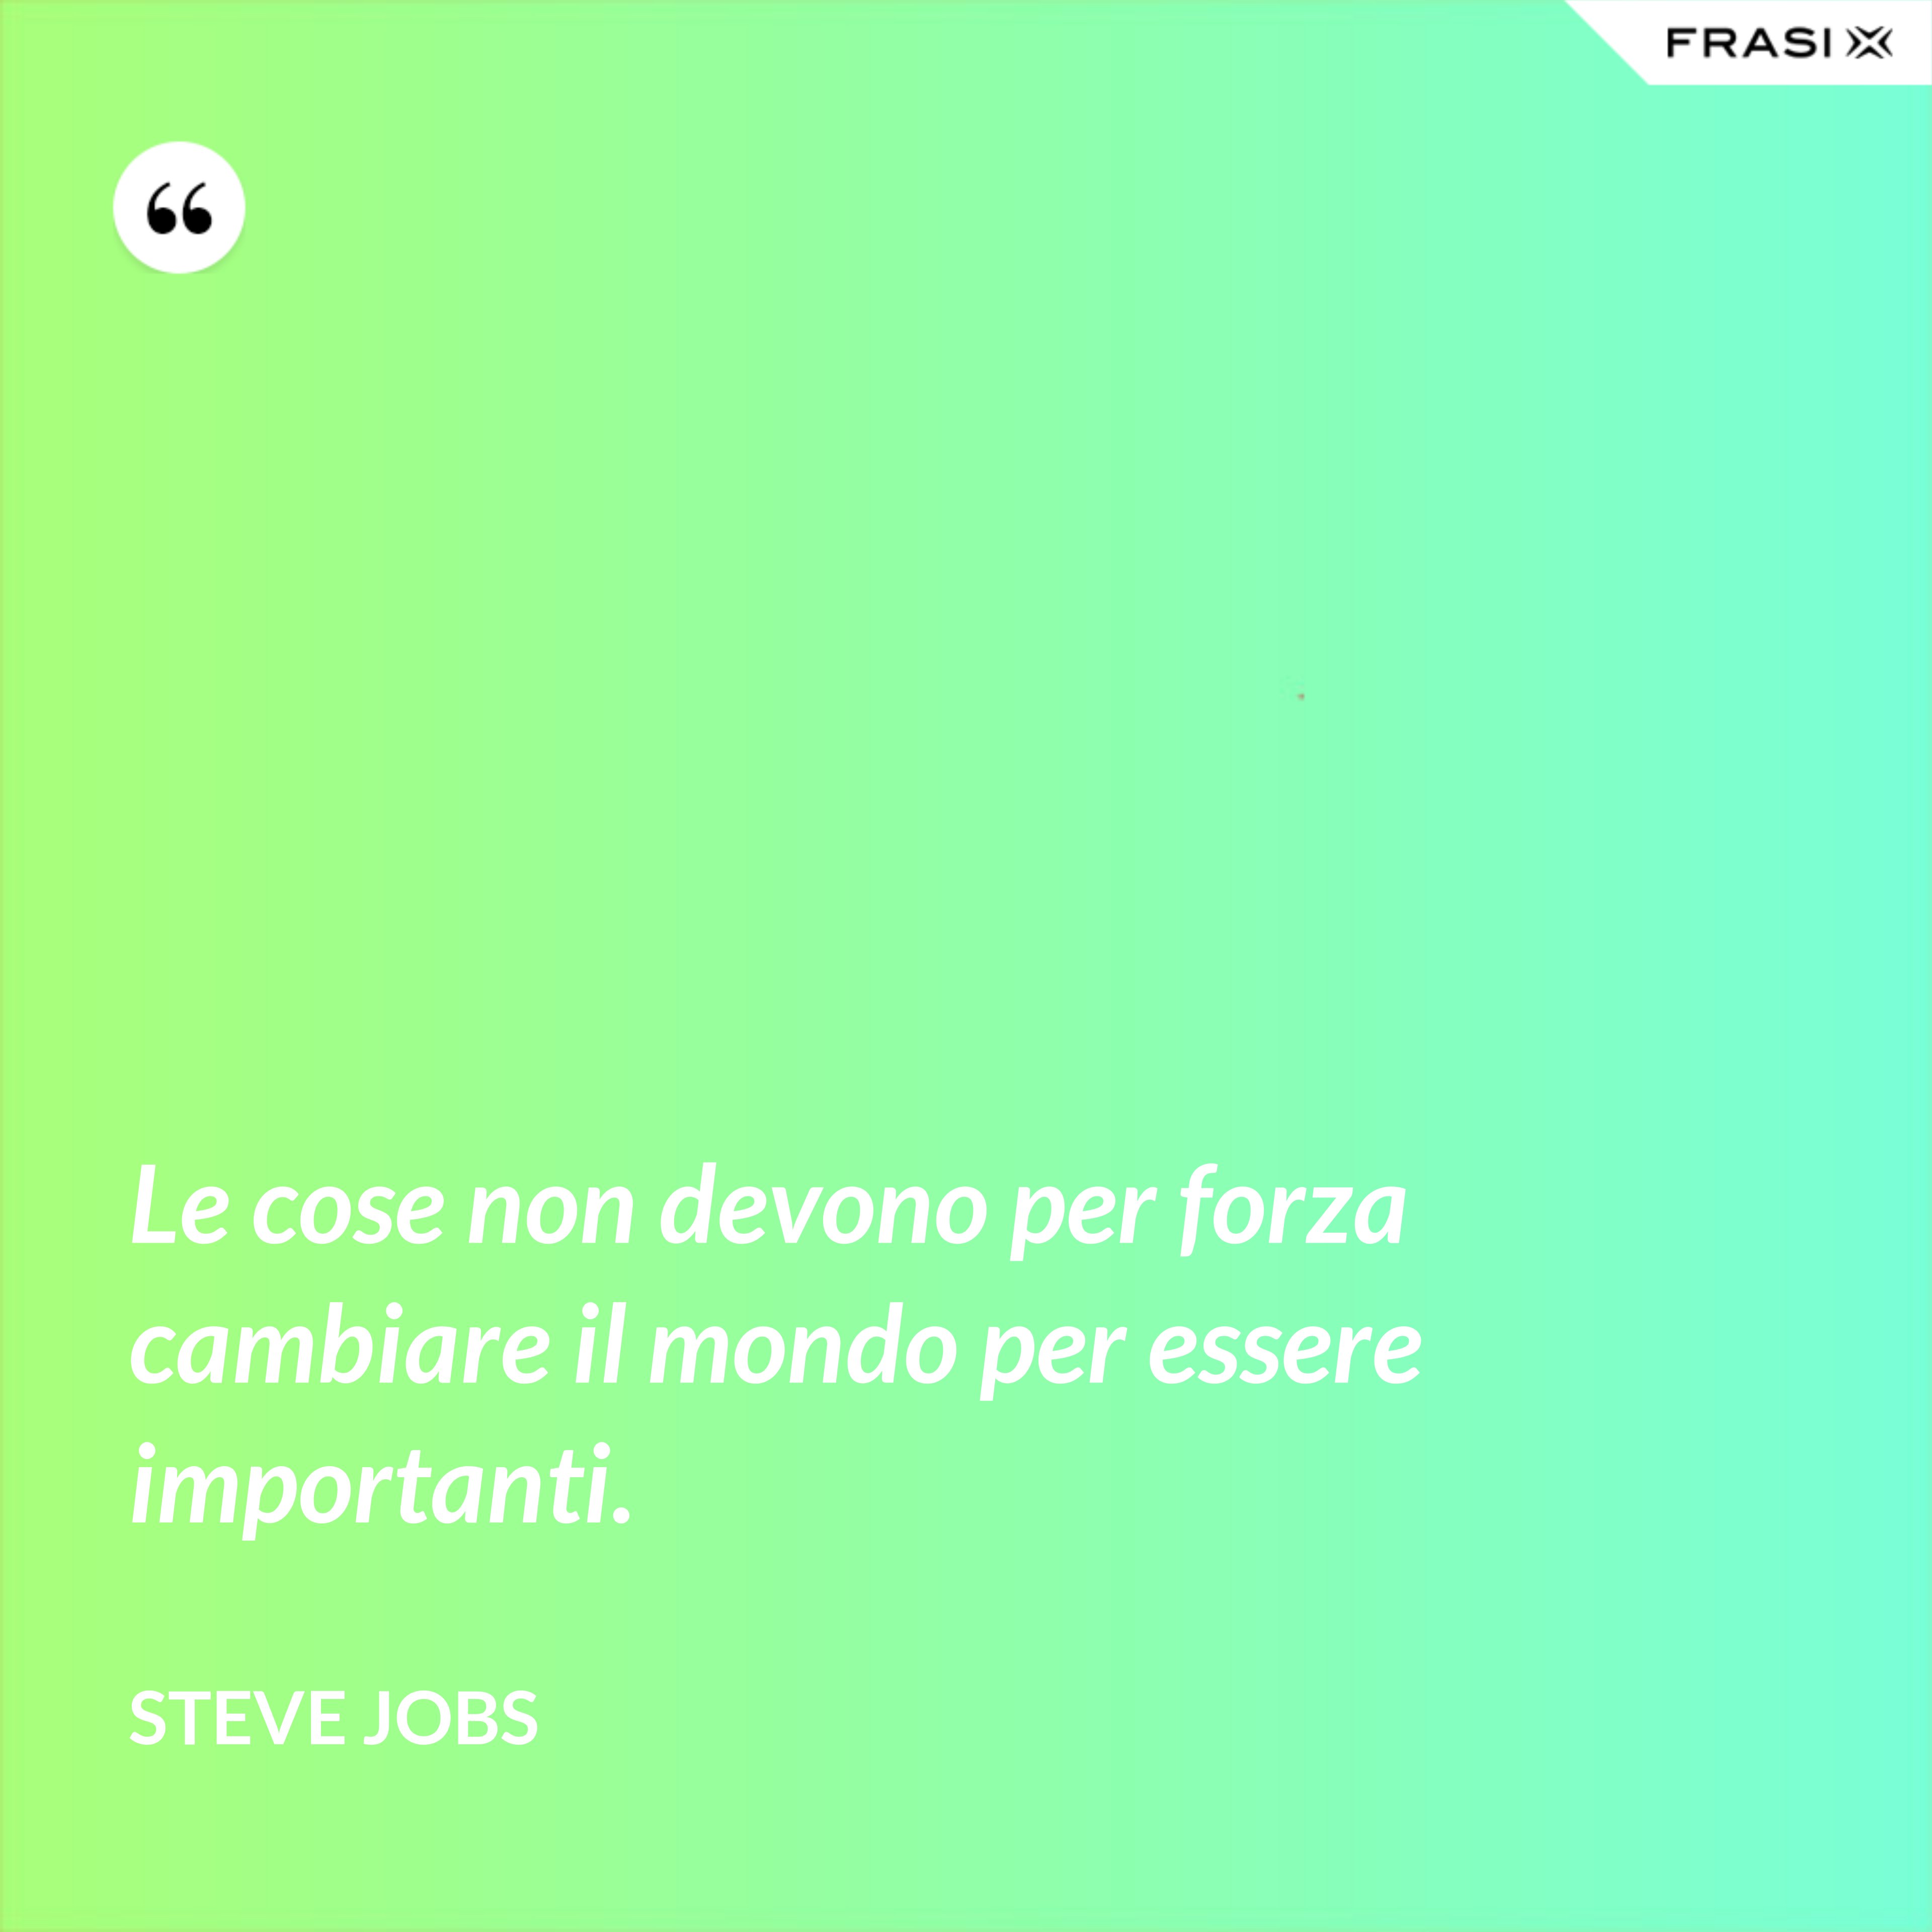 Le cose non devono per forza cambiare il mondo per essere importanti. - Steve Jobs